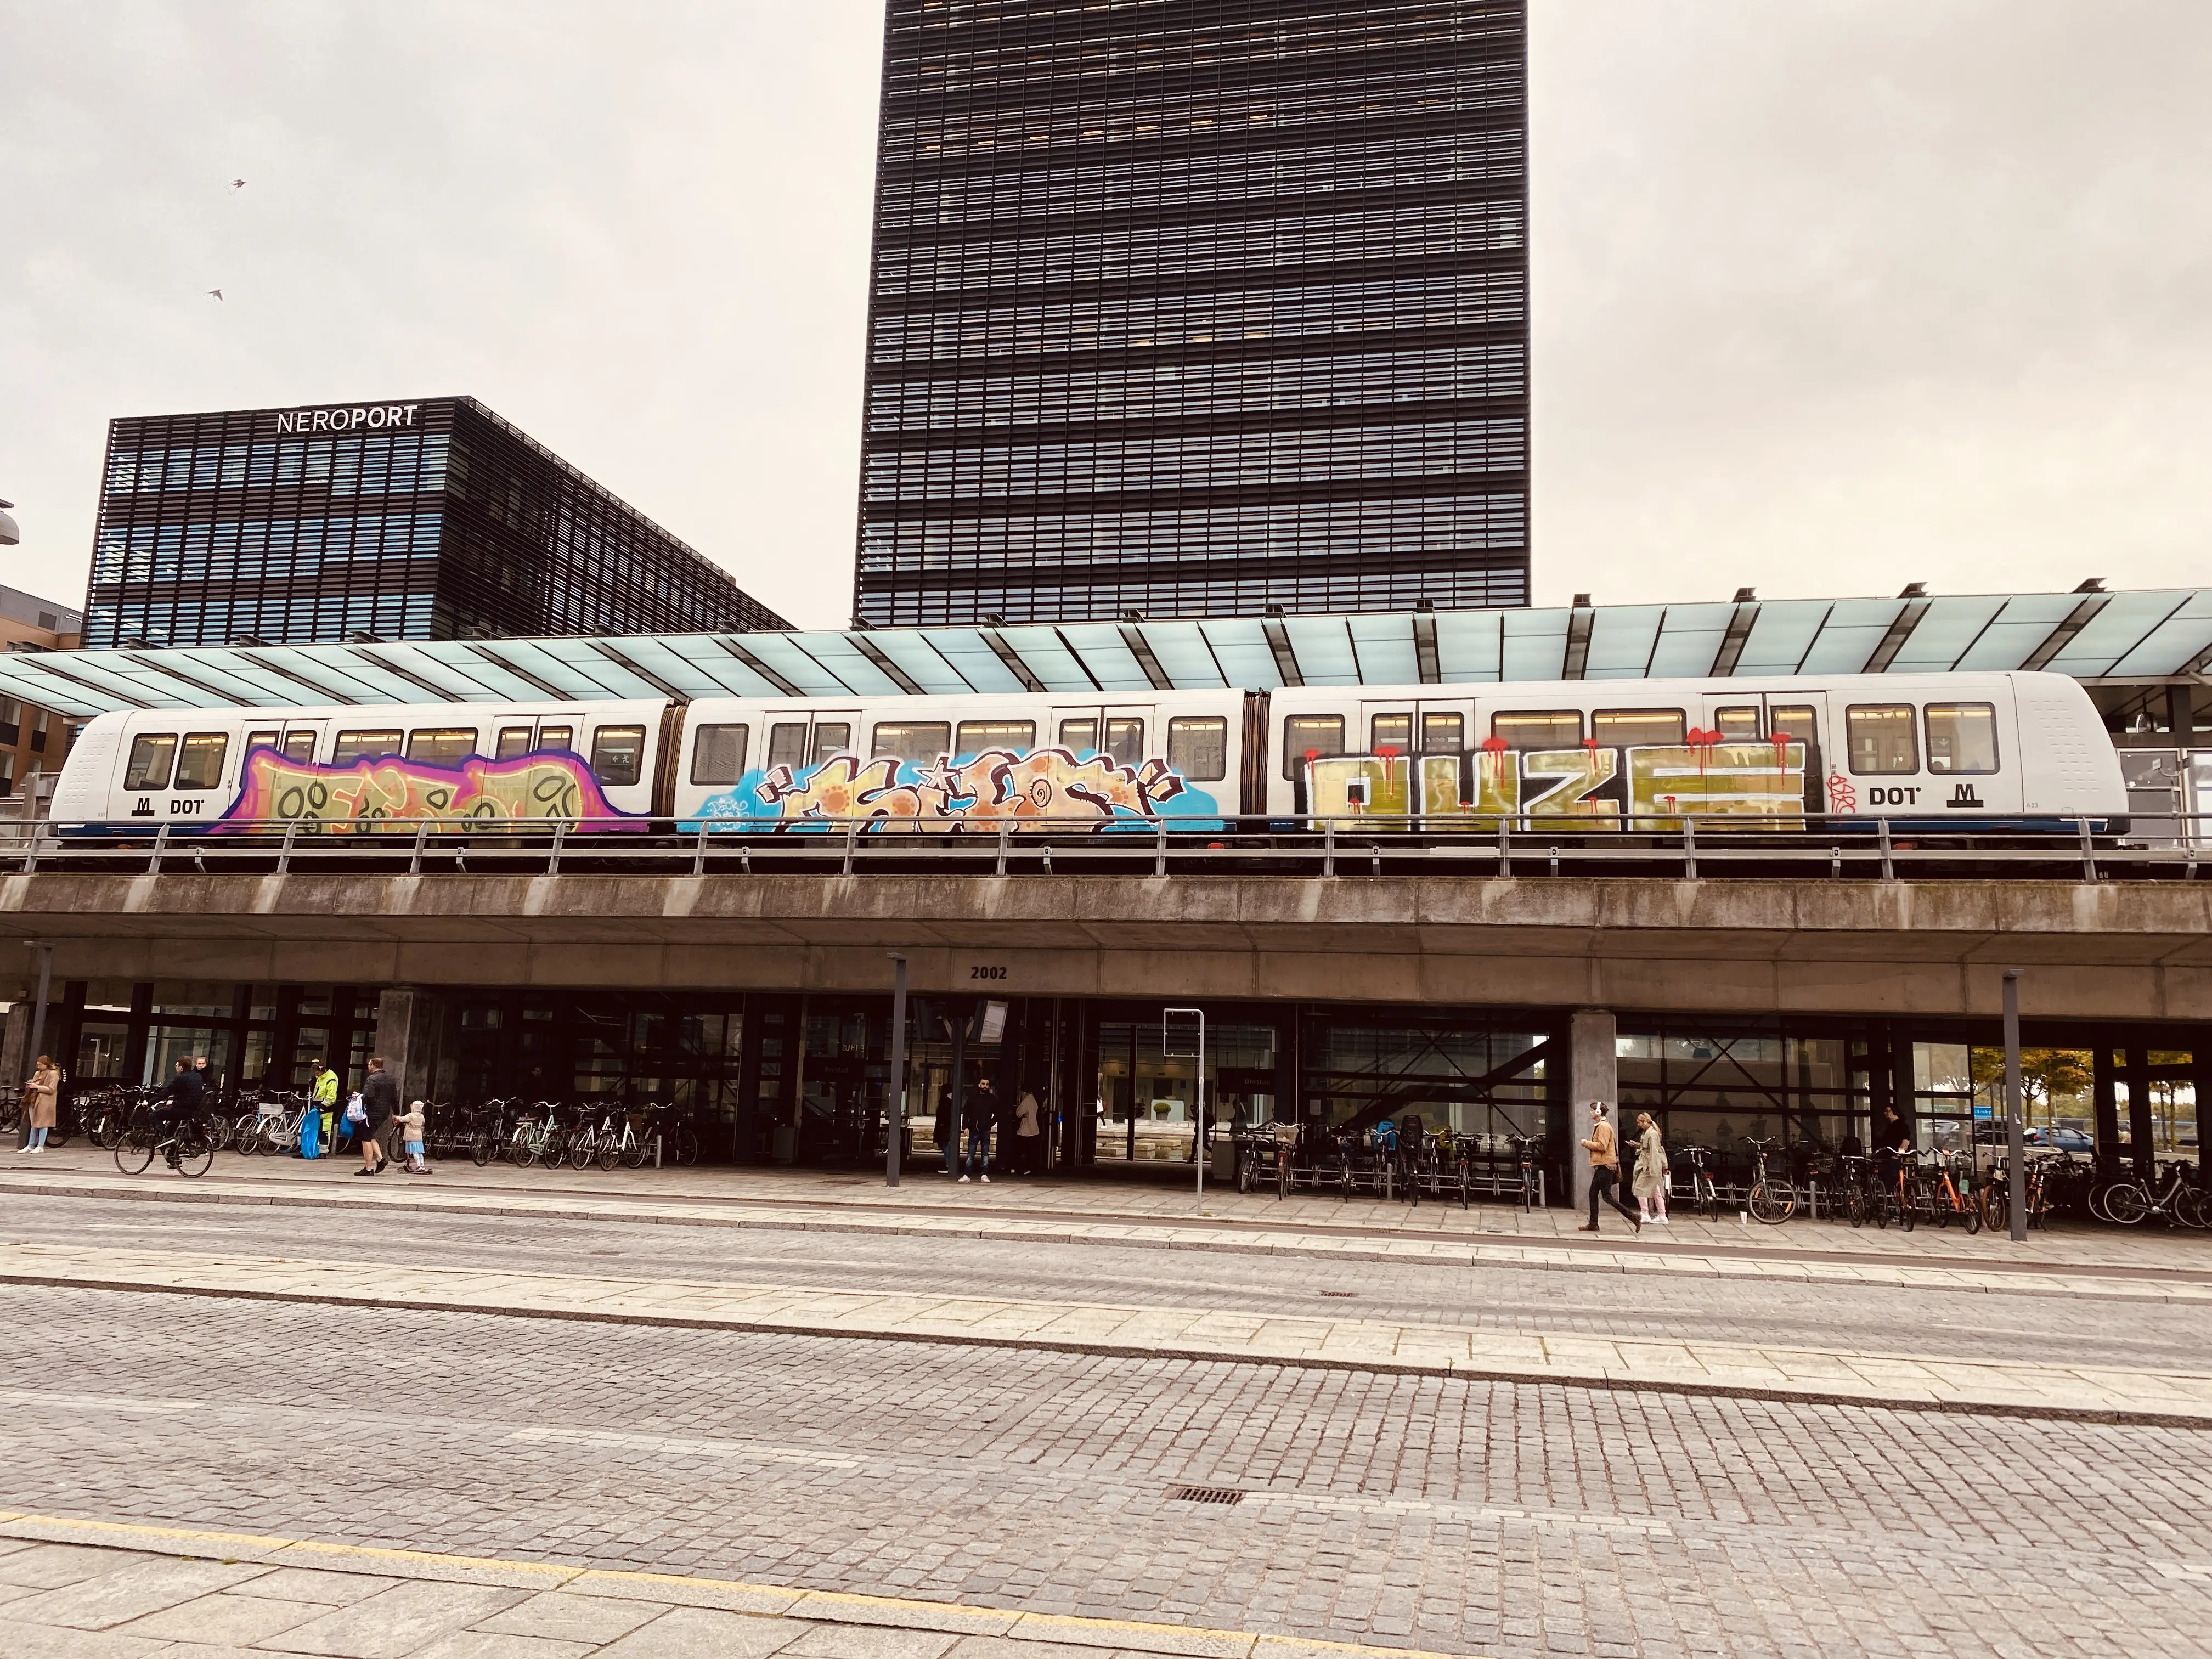 Billede af metrotog med grafittig på - ud for Ørestad Metrostation.